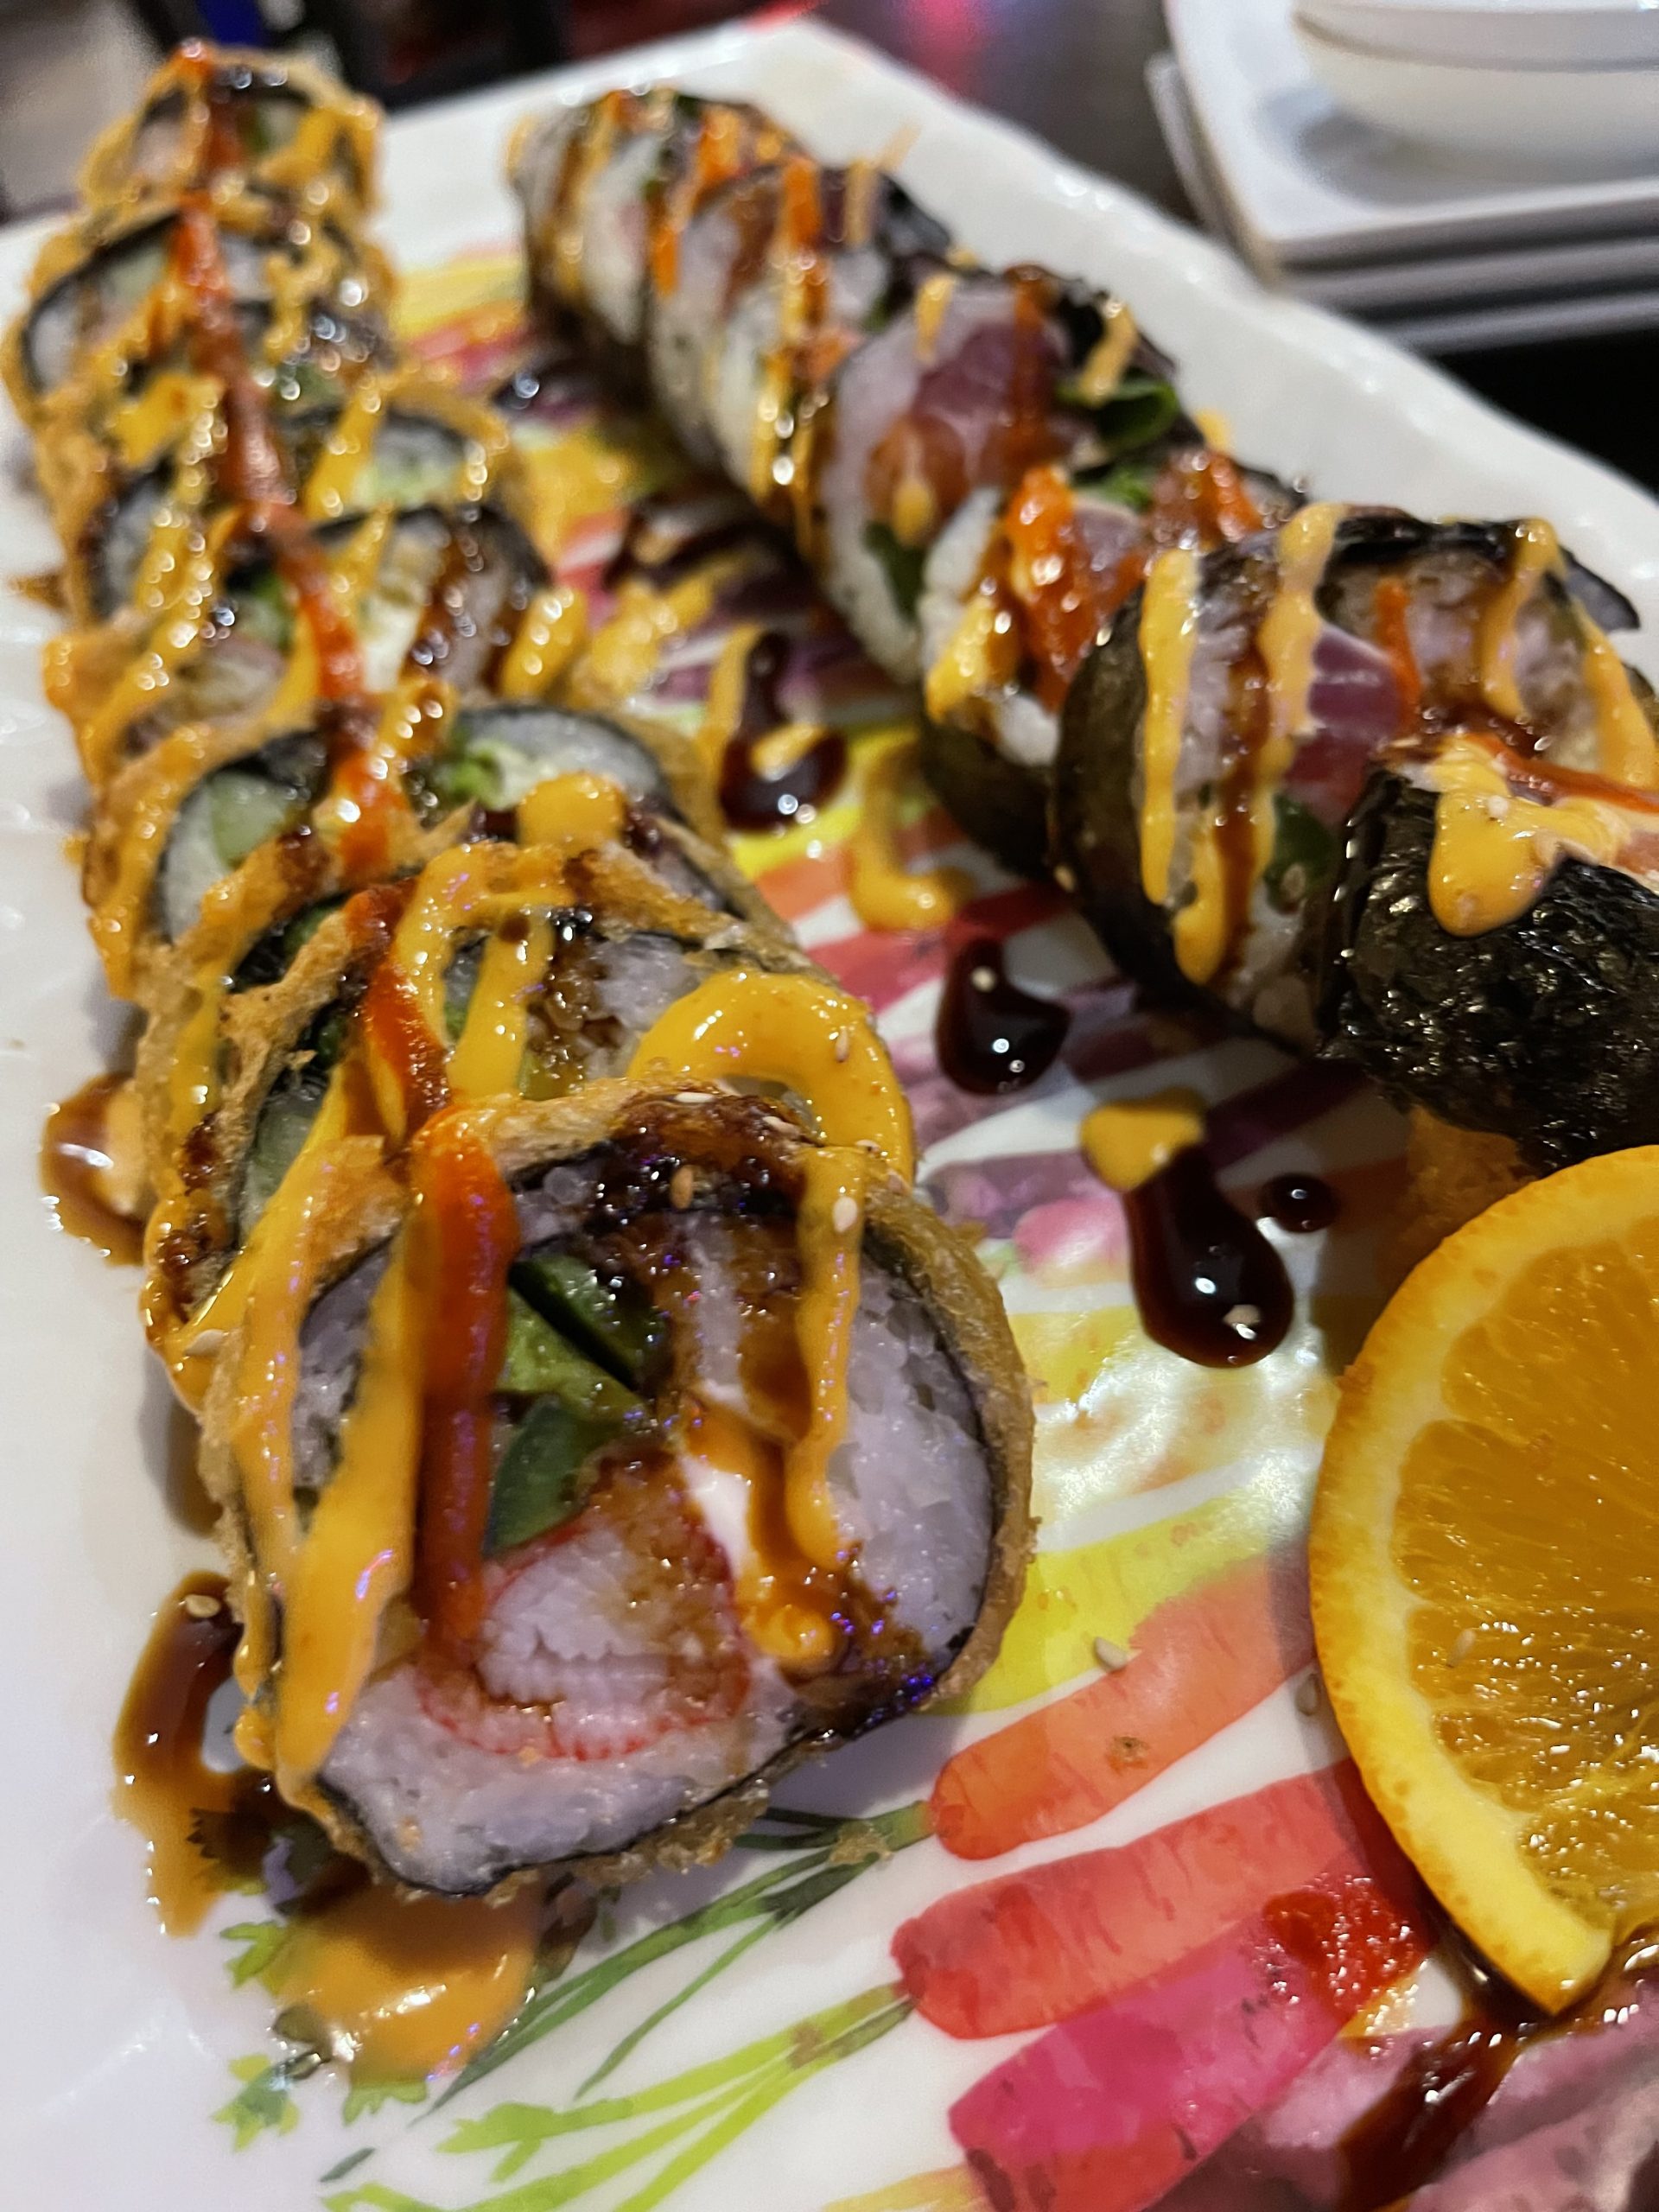 Oyshi Sushi 3 offers amazing food, service